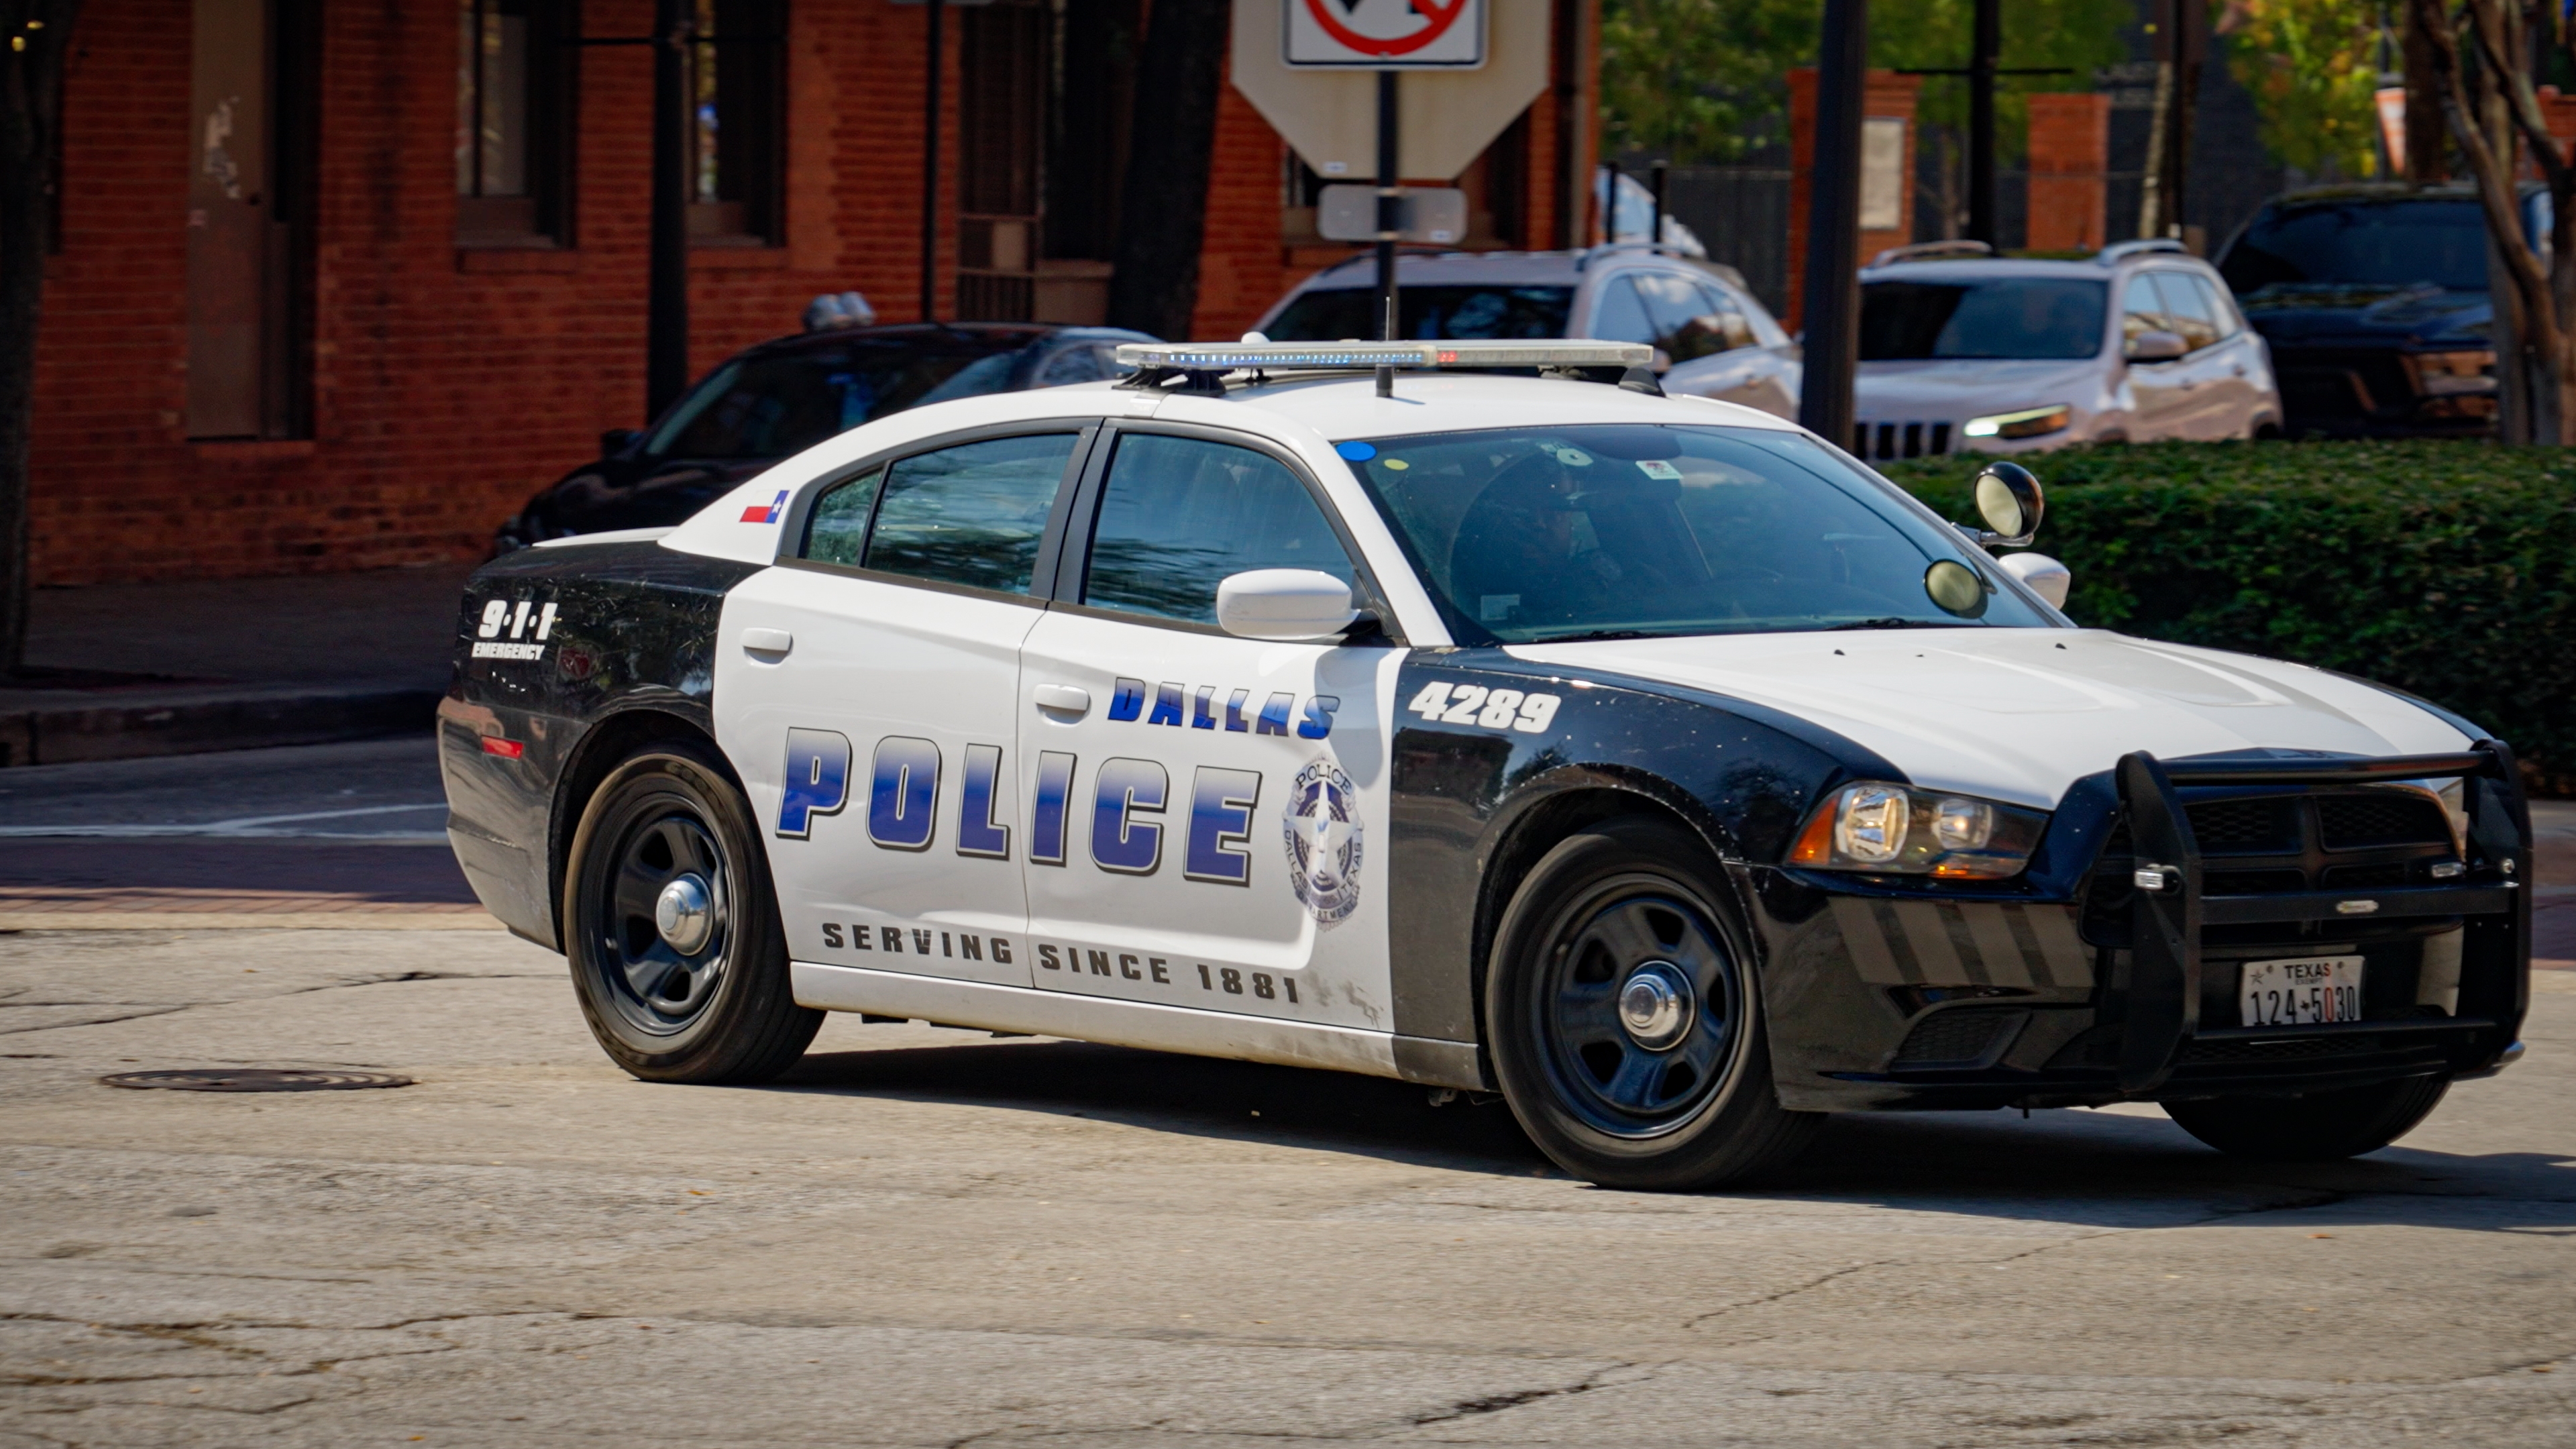 Automóvil de la Policía de Dallas en servicio | Fuente: Shutterstock.com